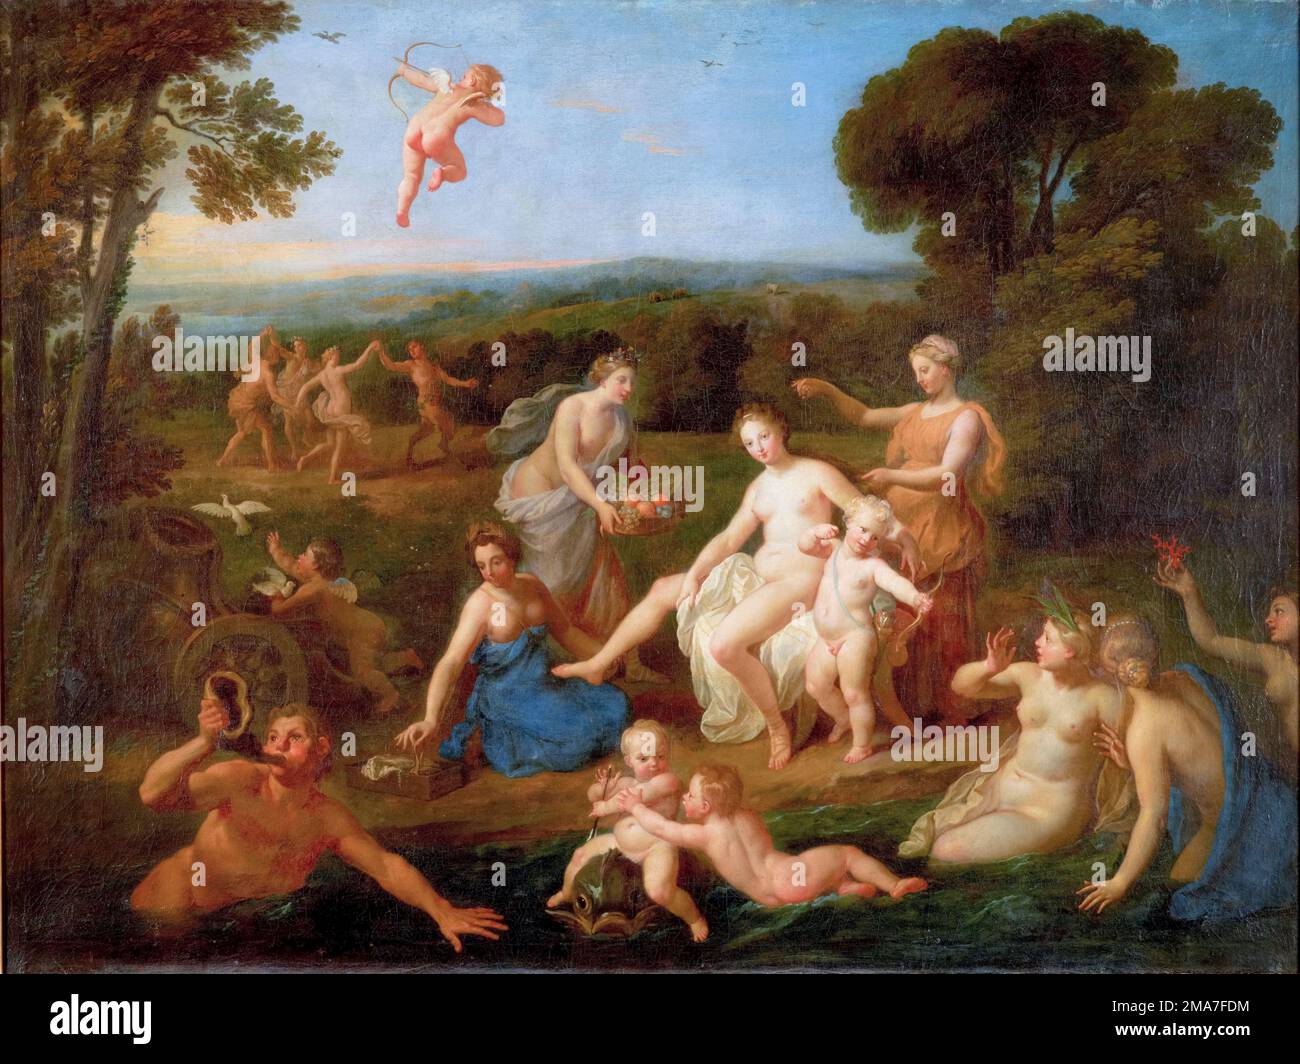 Bon Boullogne peinture, les toilettes de Vénus, peinture à l'huile sur toile, vers 1700 Banque D'Images